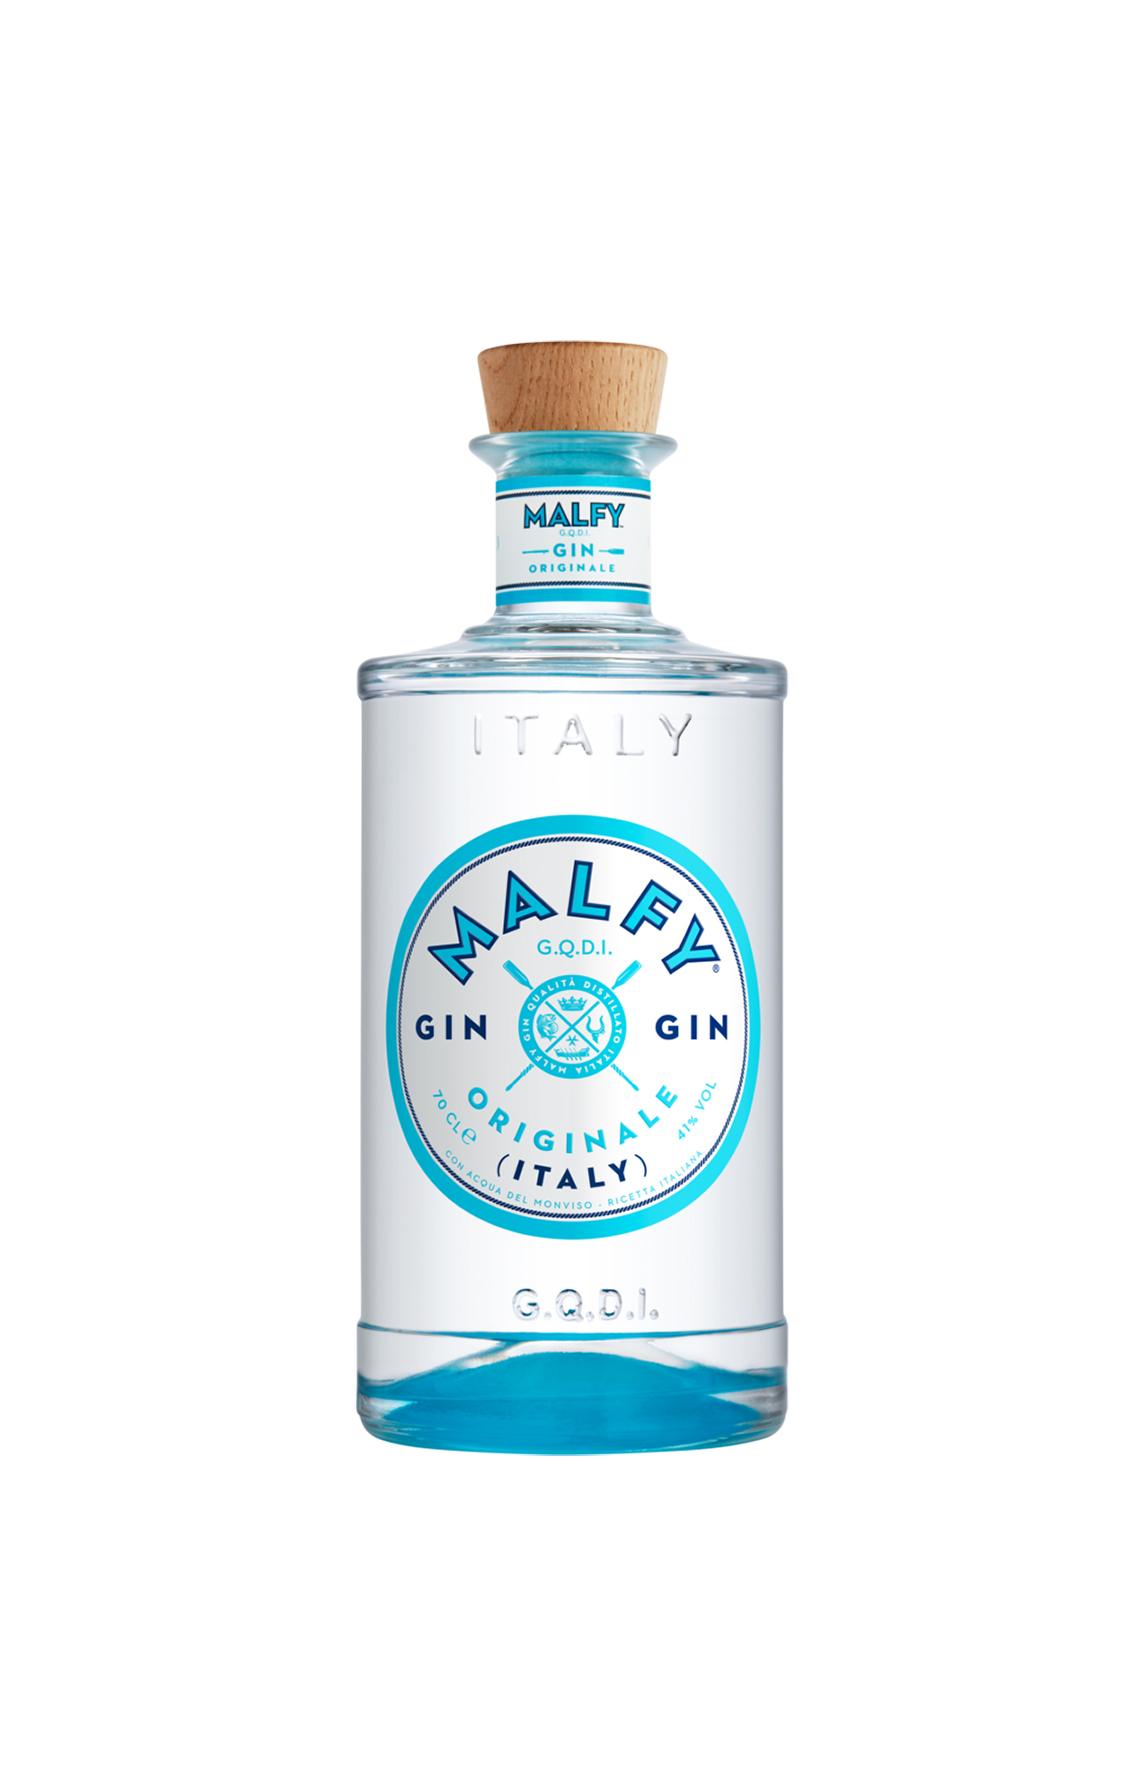 Malfy Gin - Originale - Premium Gin aus Italien - 41%vol. 0,7l